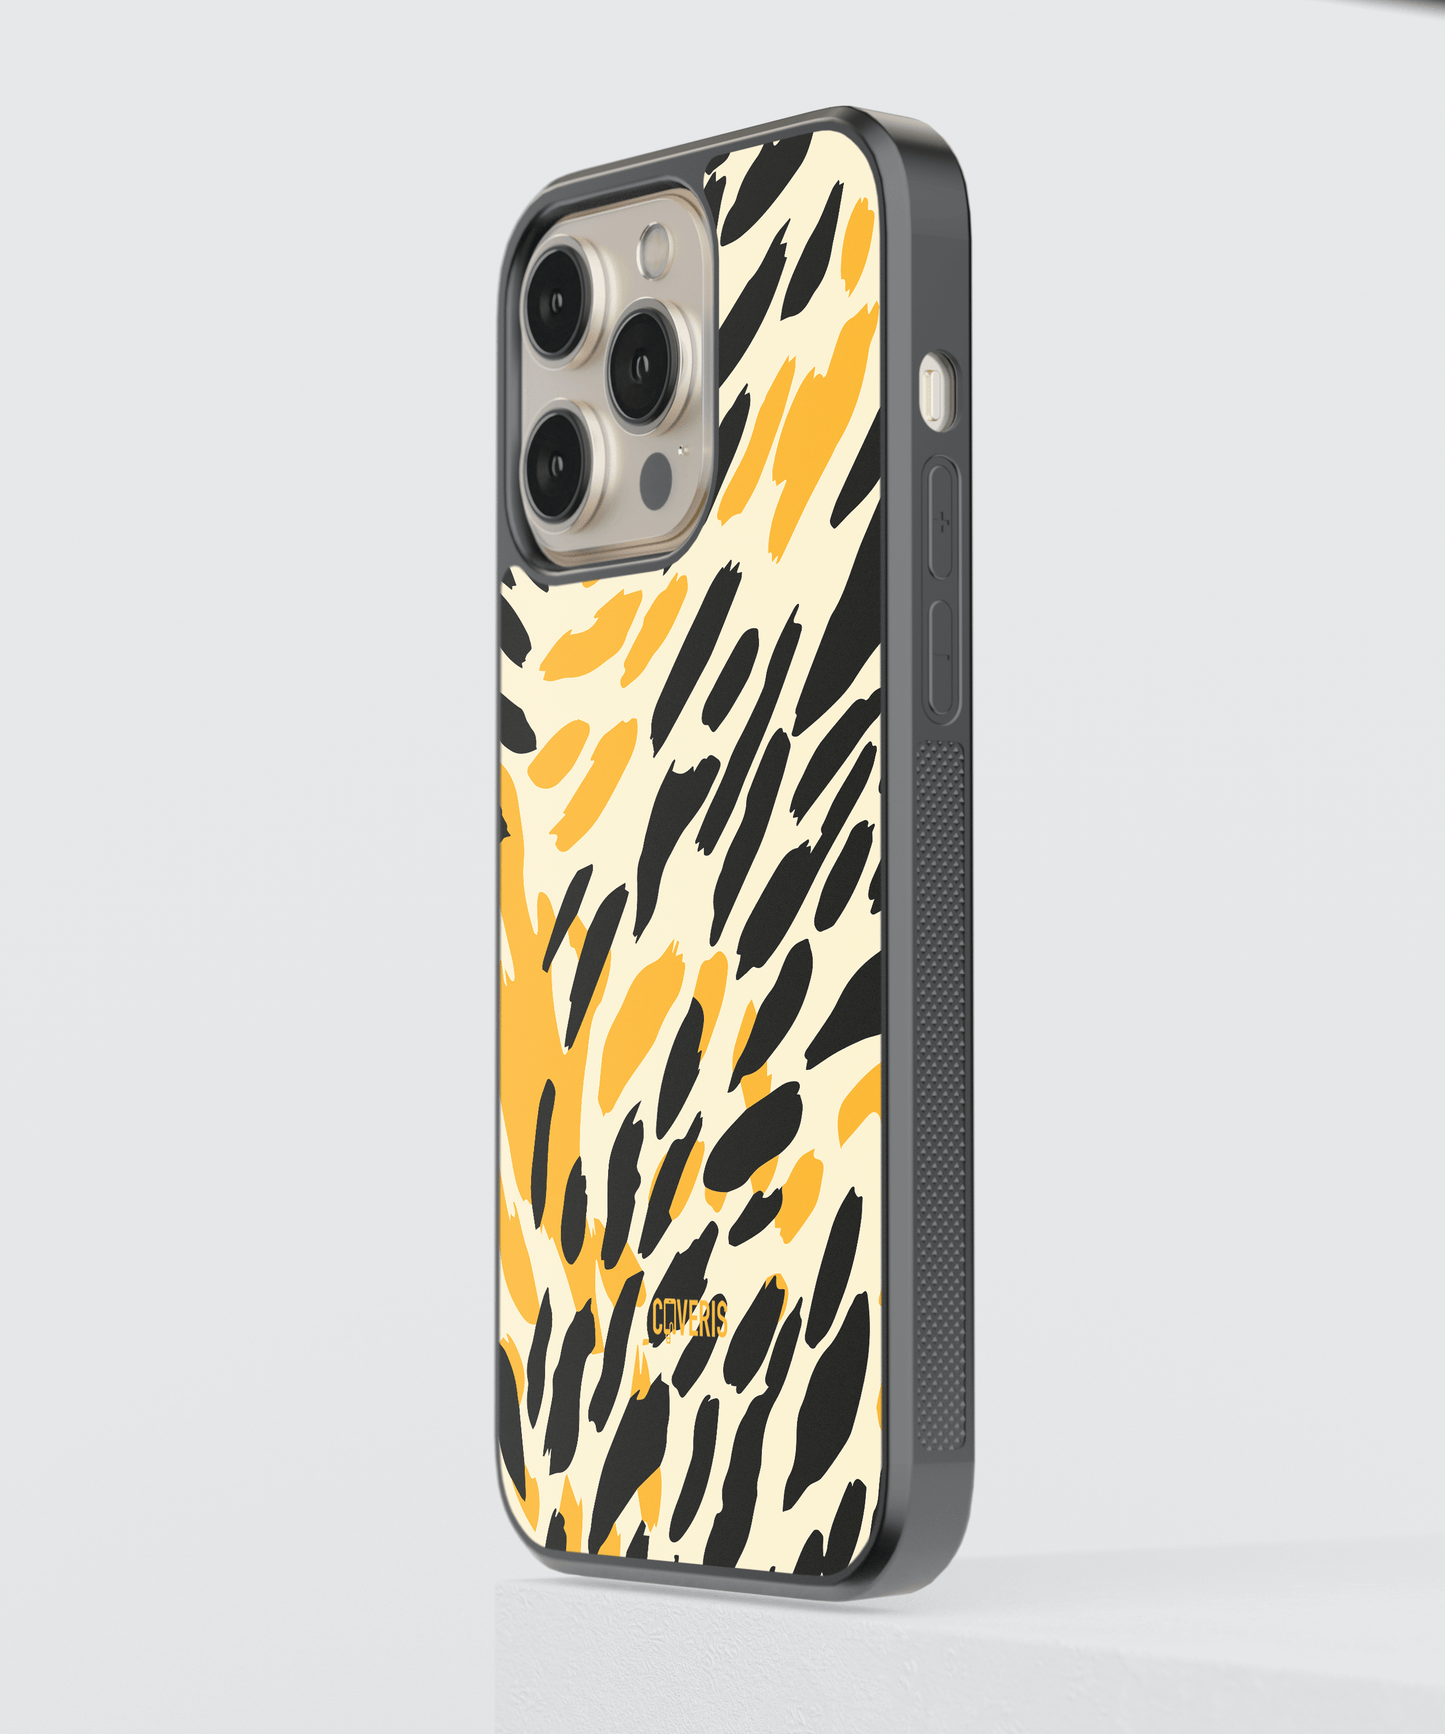 Cheetah - Samsung Galaxy A81 phone case